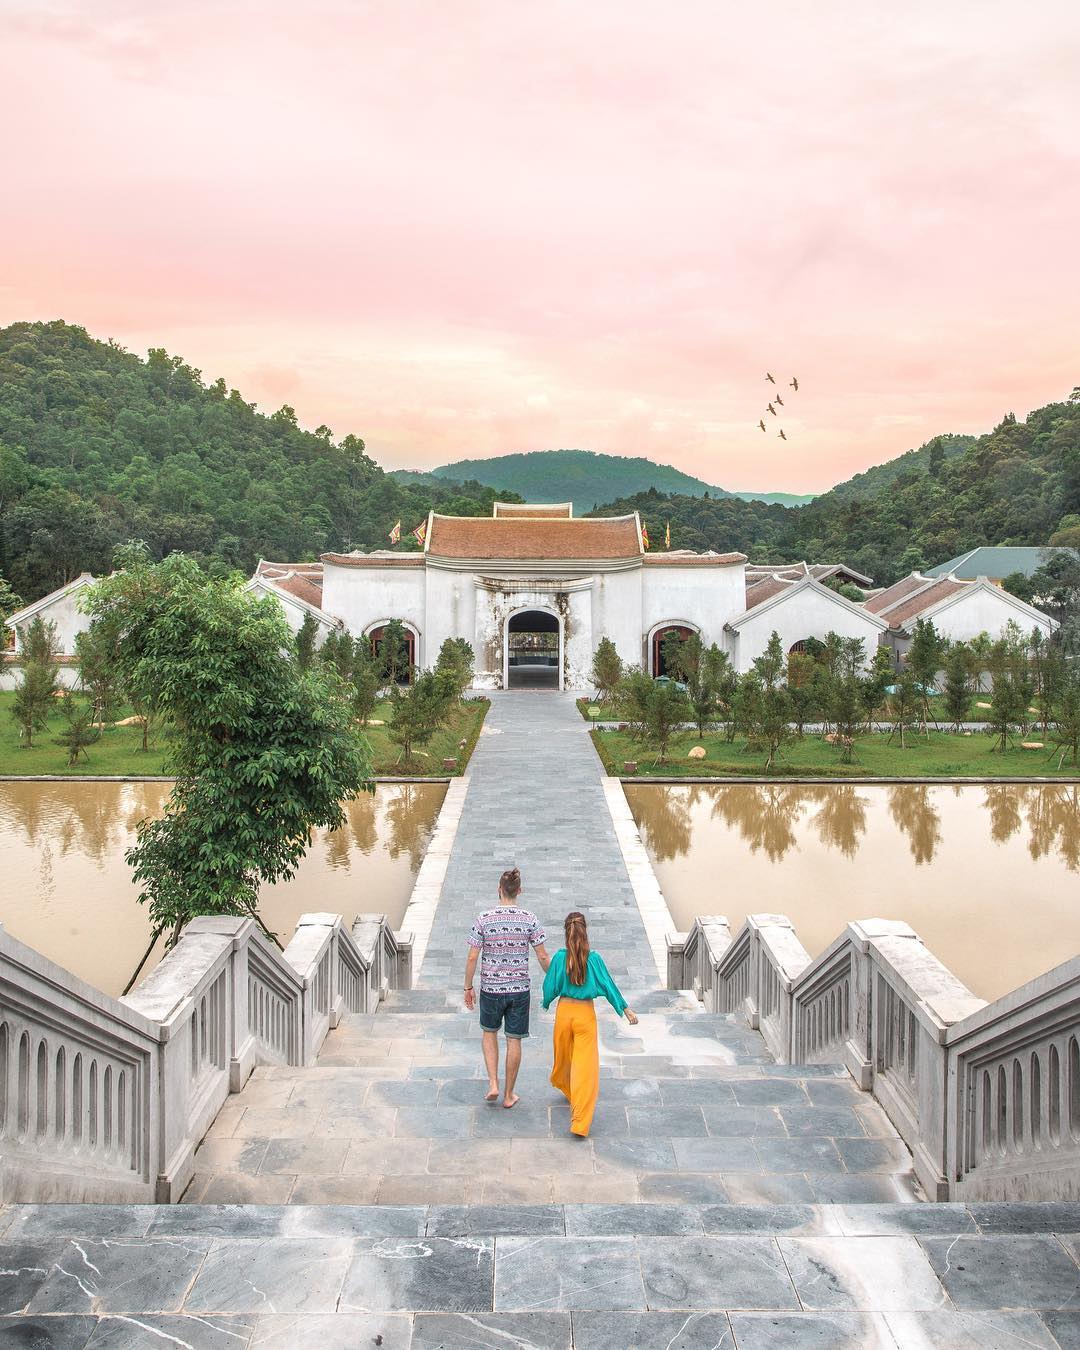 Tại Yên Tử hiện tại đã có nhiều nơi lưu trú, resort đẹp như tranh để du khách kết hợp du lịch tâm linh và du lịch nghỉ dưỡng.